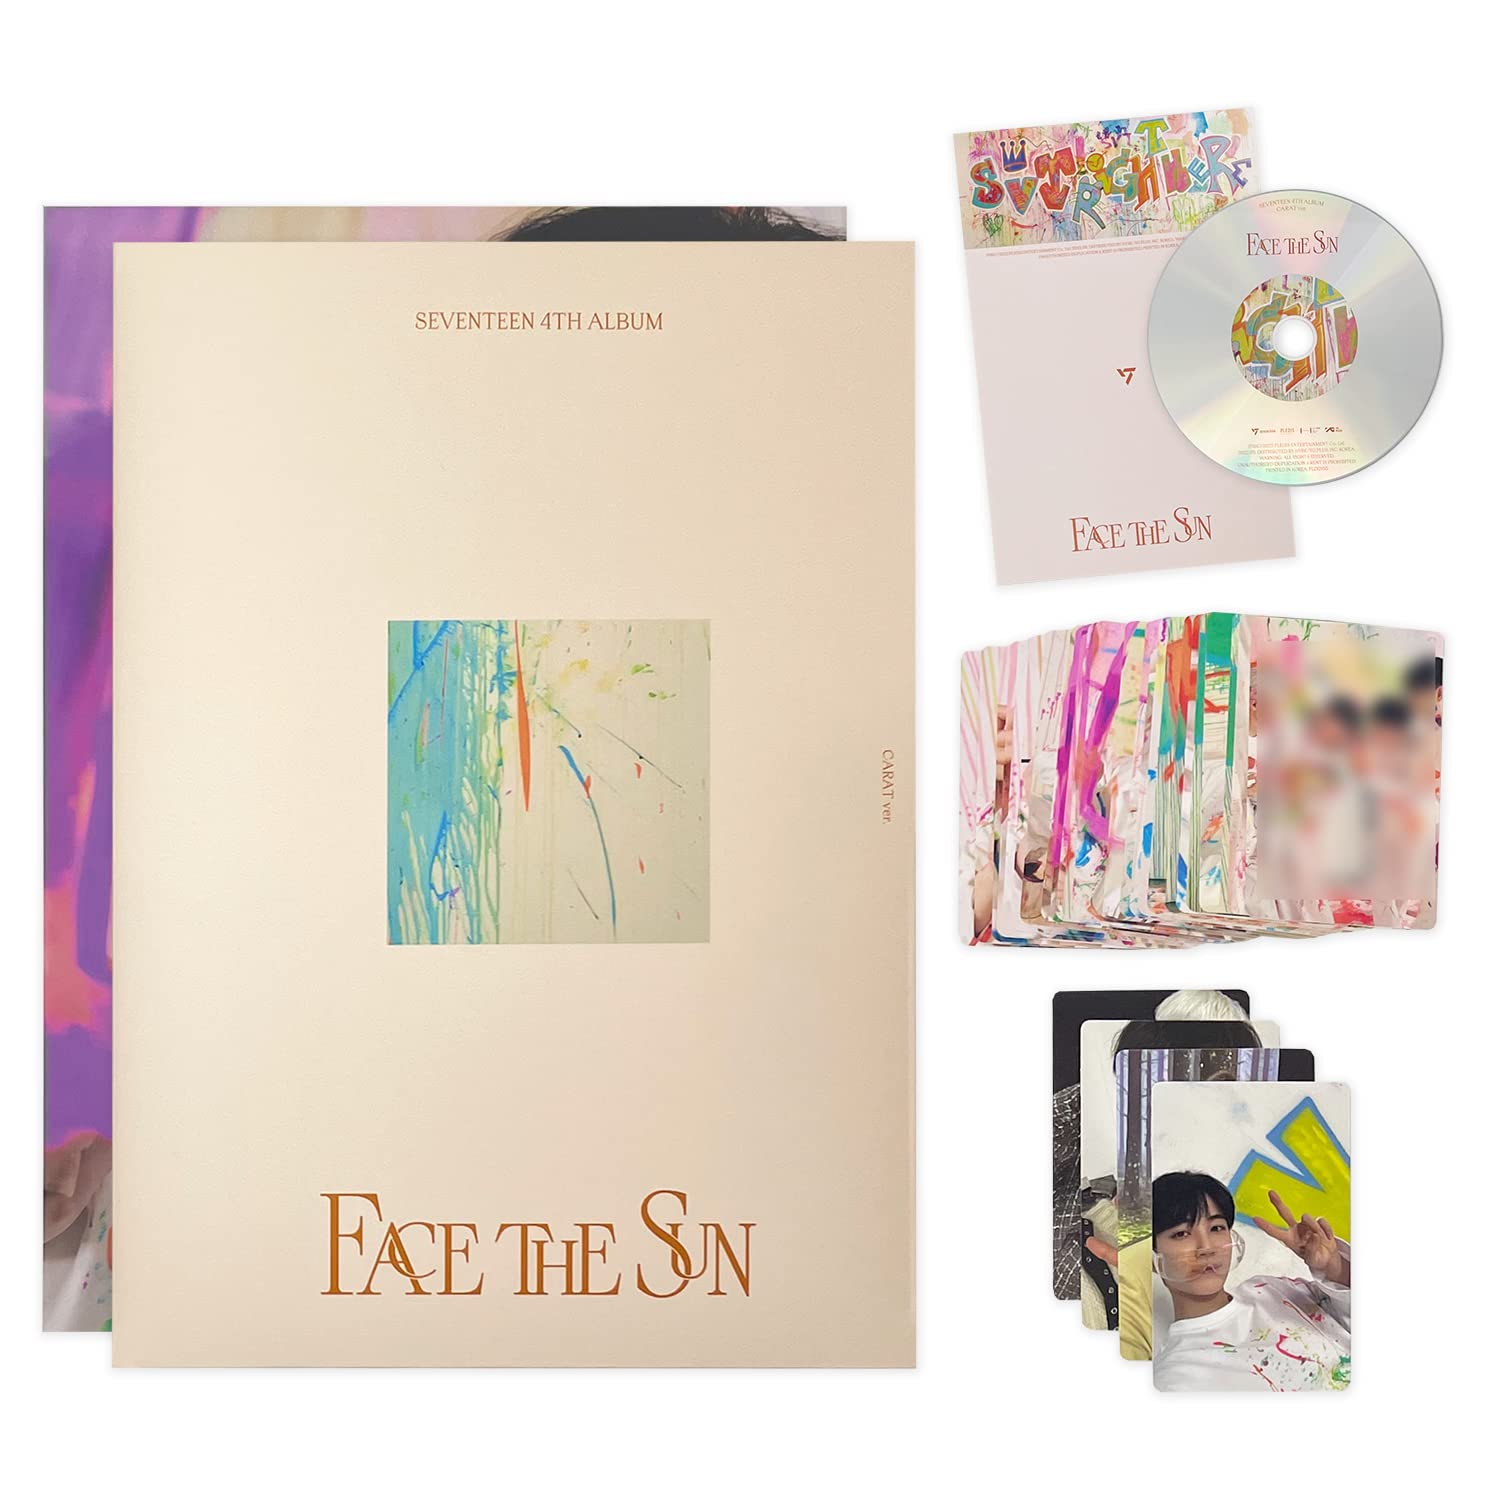 SEVENTEEN -4th Album [Face the Sun] (Carat ver.) RANDOM